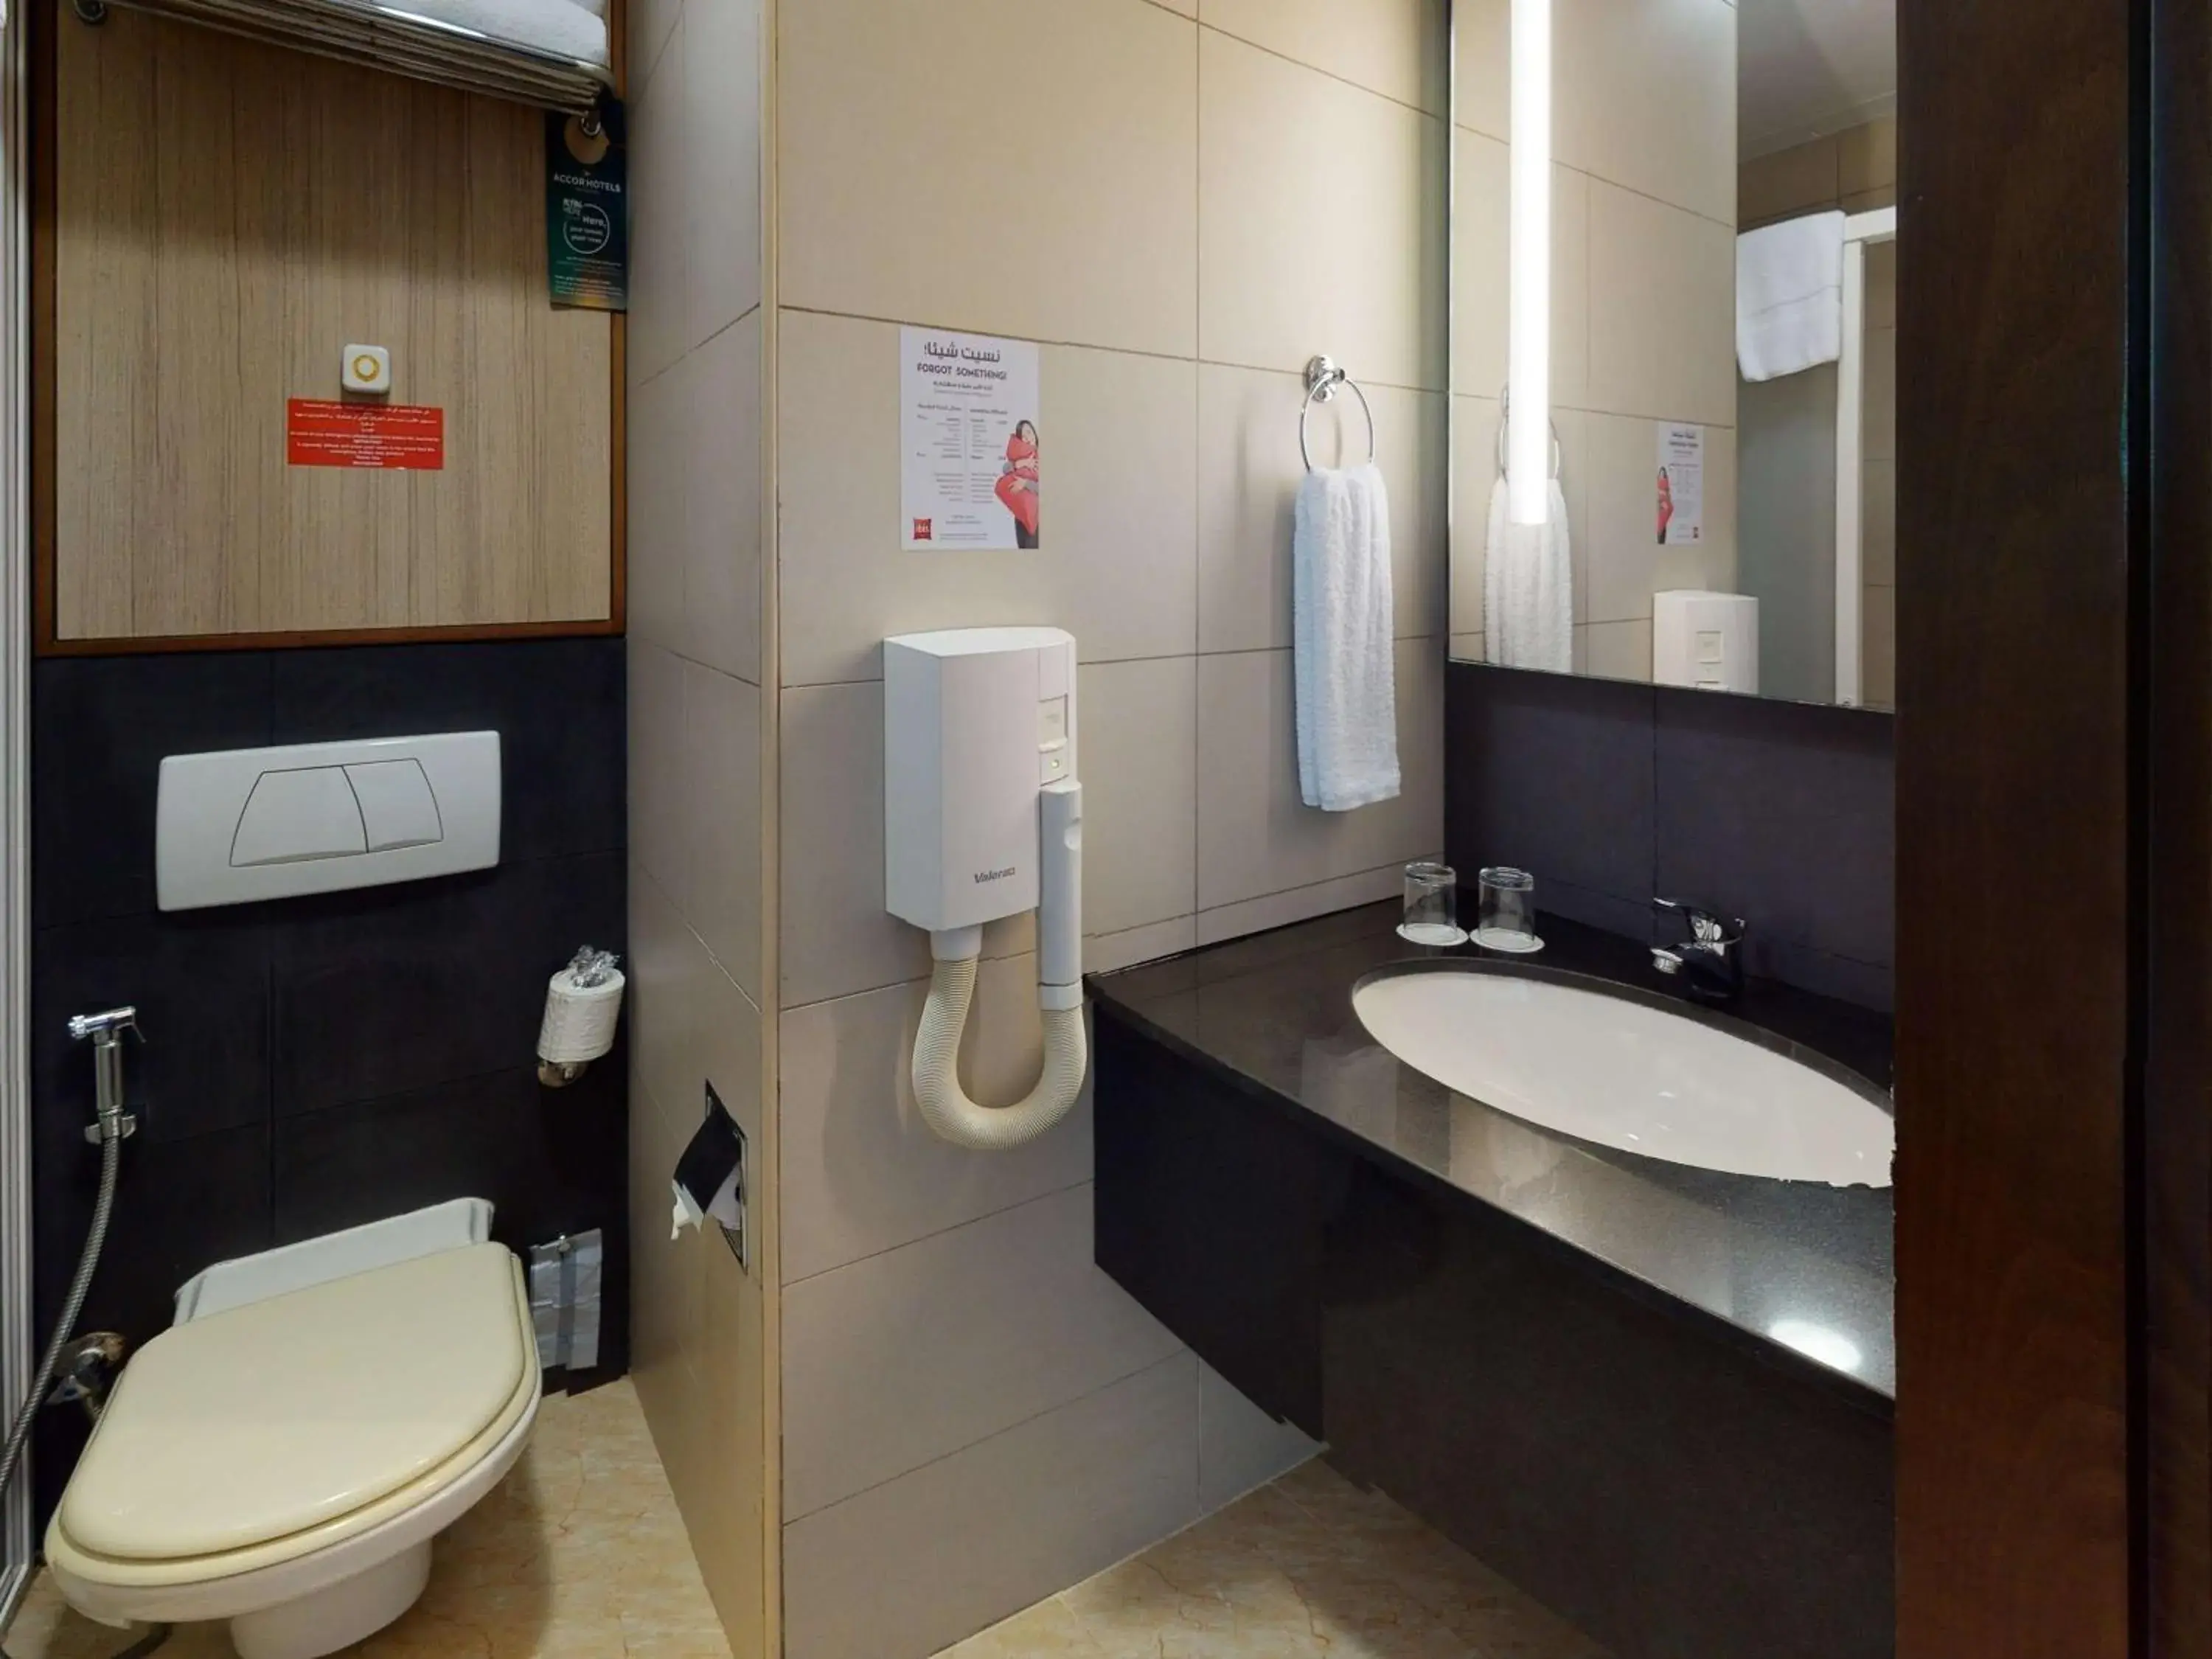 Photo of the whole room, Bathroom in Ibis Al Barsha